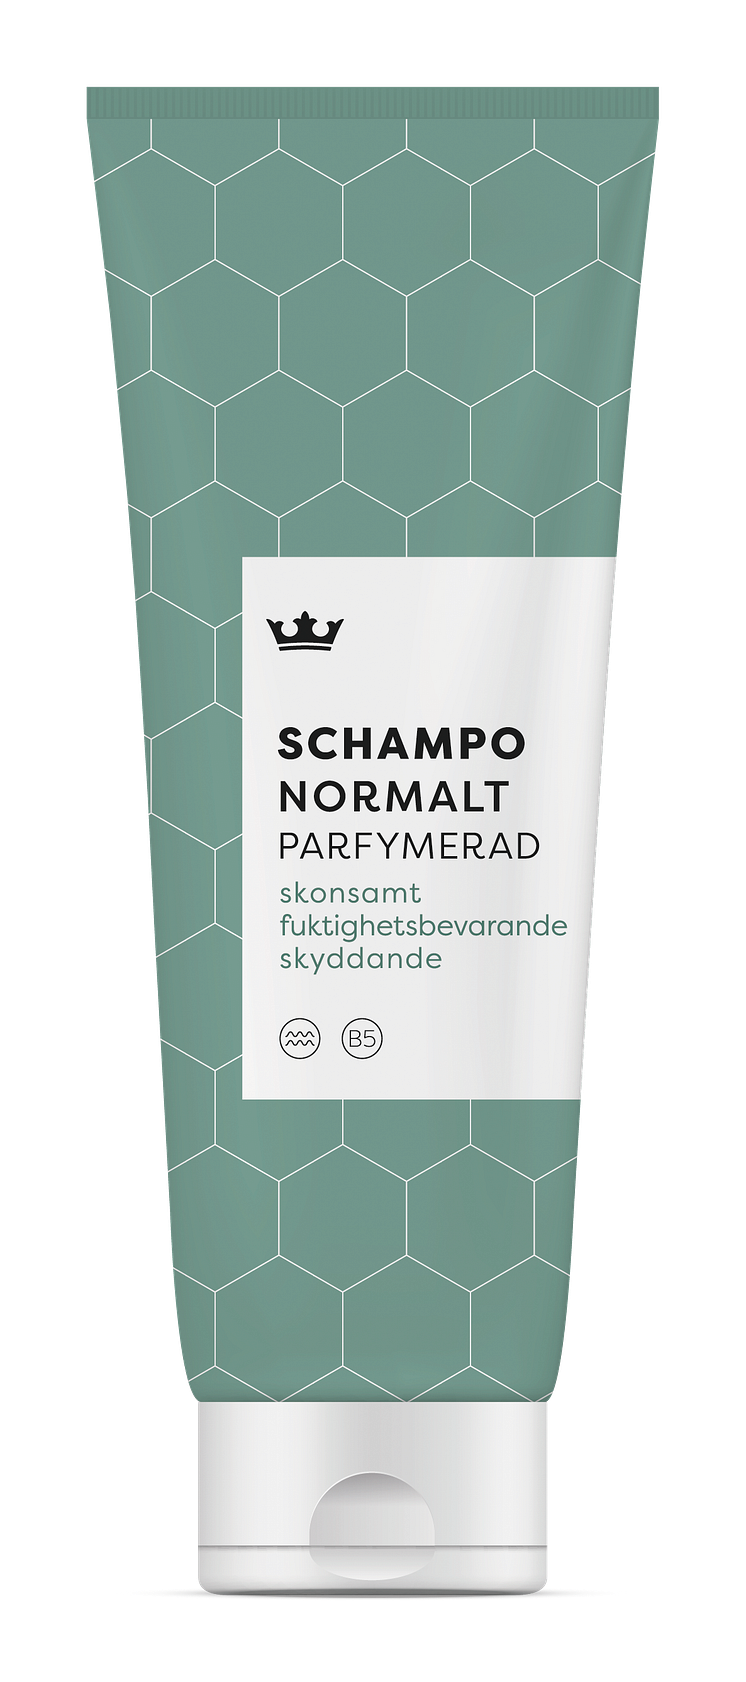 Kronan_Schampo Normal PARF